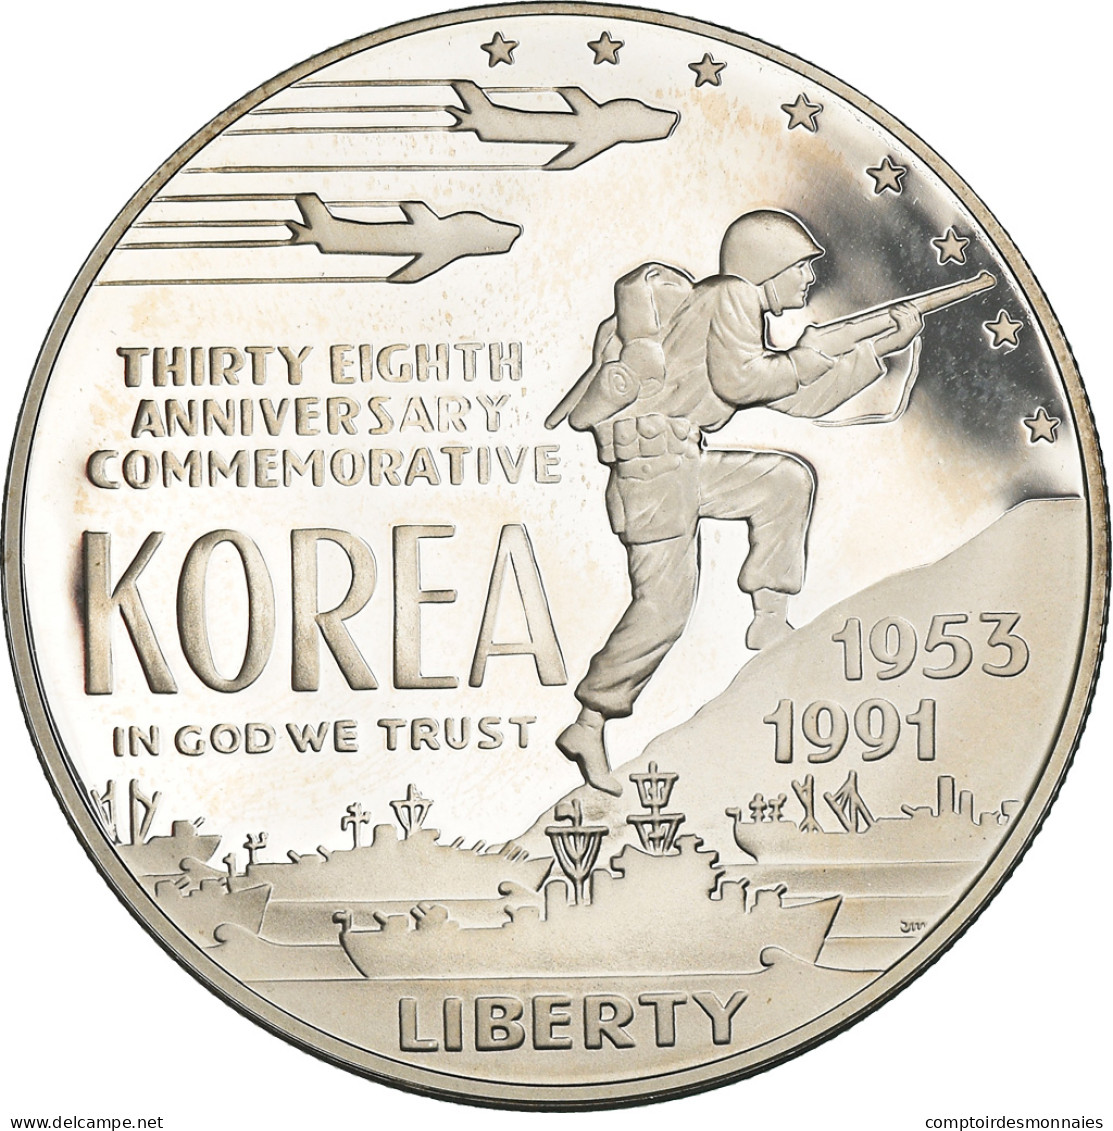 Monnaie, États-Unis, Guerre De Corée, Dollar, 1991, Philadelphie, FDC, Argent - Commemoratives